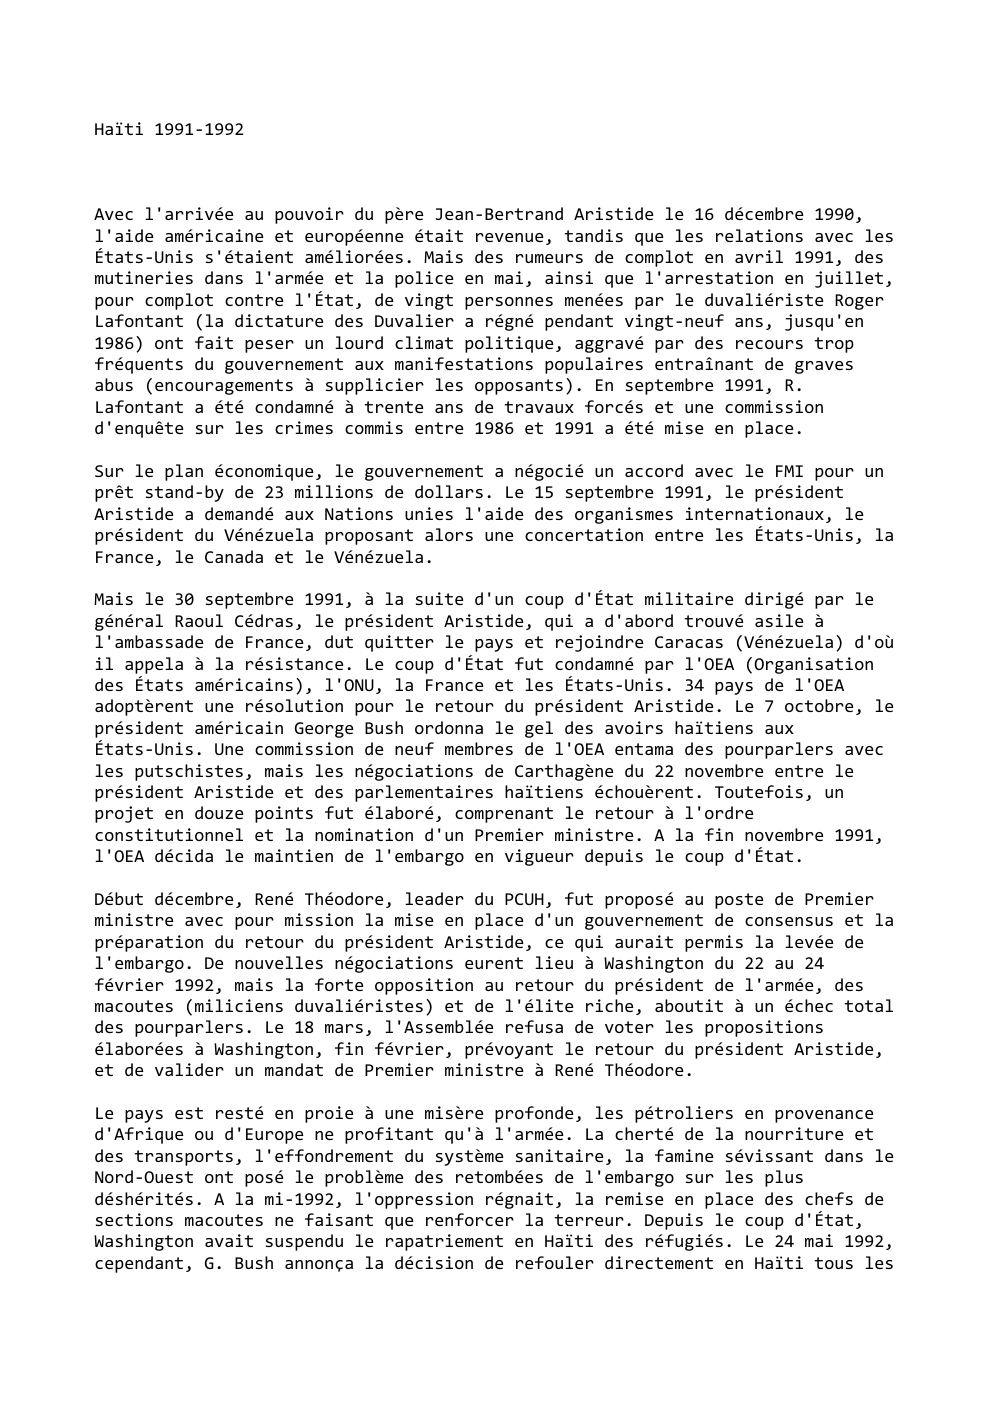 Prévisualisation du document Haïti 1991-1992

Avec l'arrivée au pouvoir du père Jean-Bertrand Aristide le 16 décembre 1990,
l'aide américaine et européenne était revenue,...